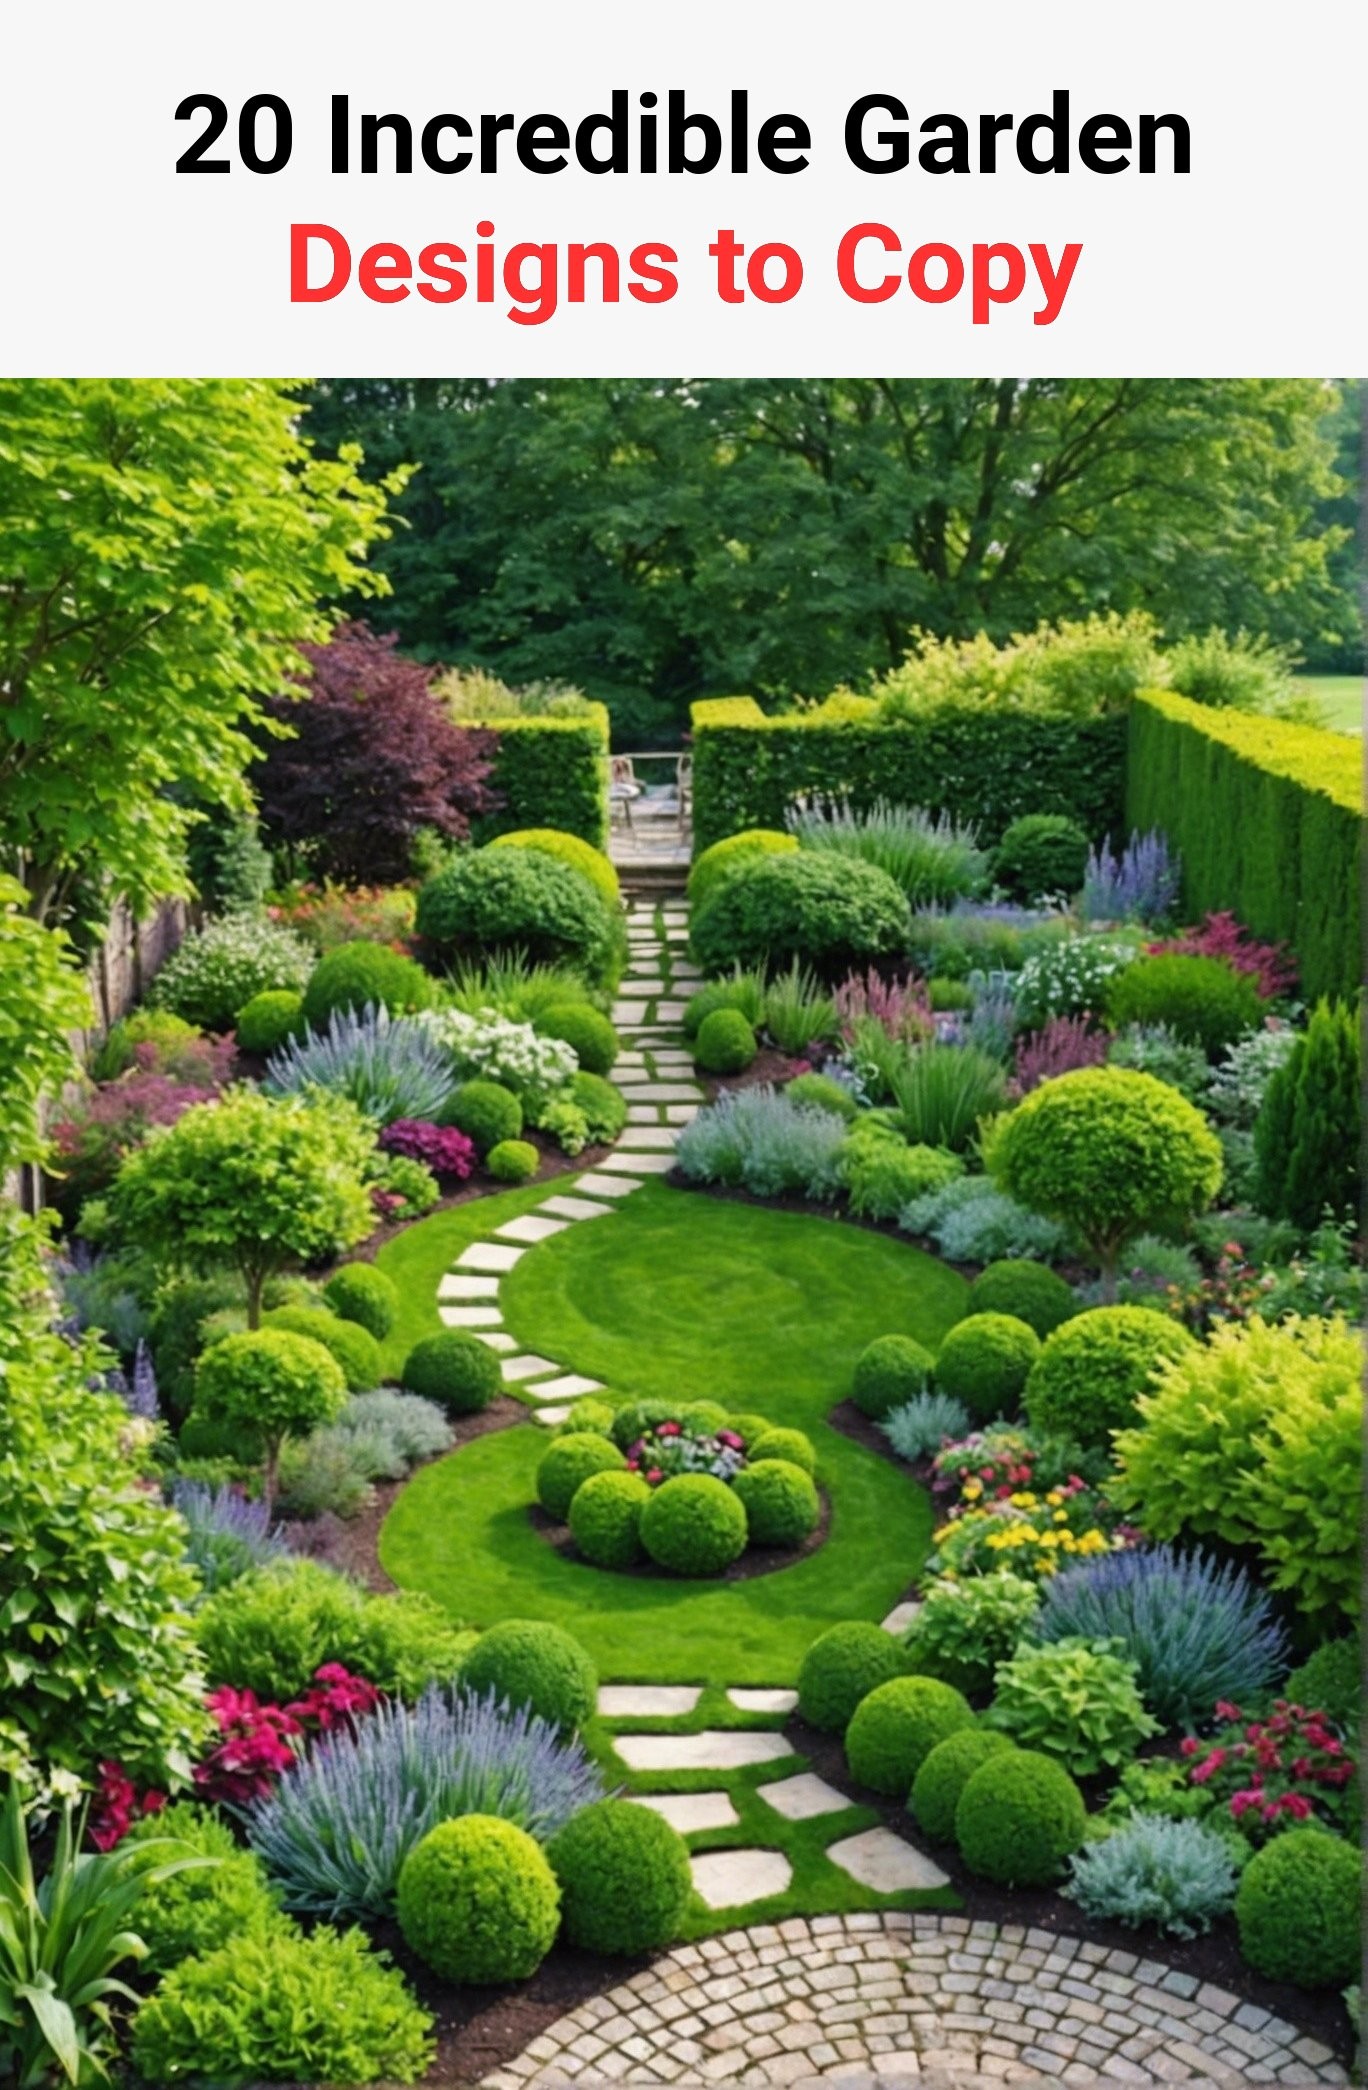 20 Incredible Garden Designs to Copy